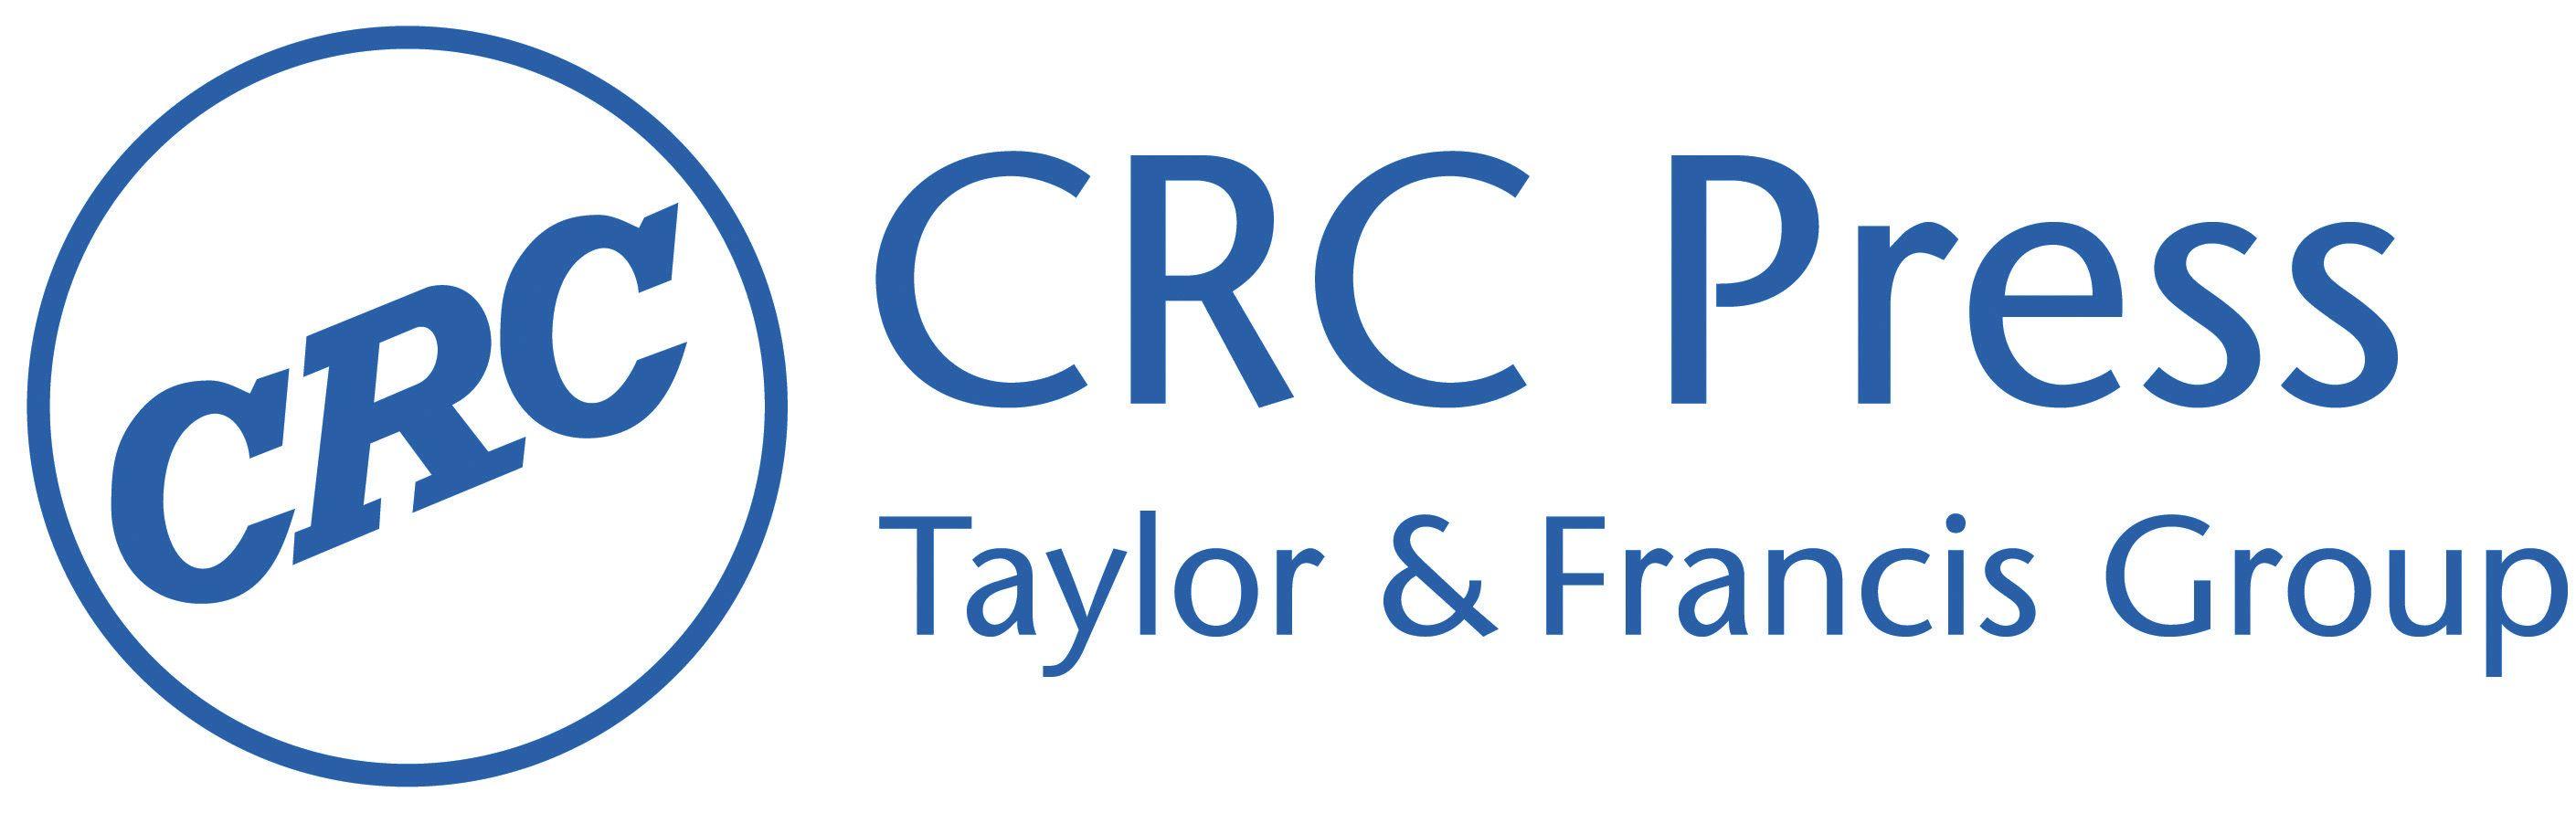 Crc press. CRC лого. Taylor & Francis Group. CRC логотип вектор. CRC Press издательства компьютерной литературы.